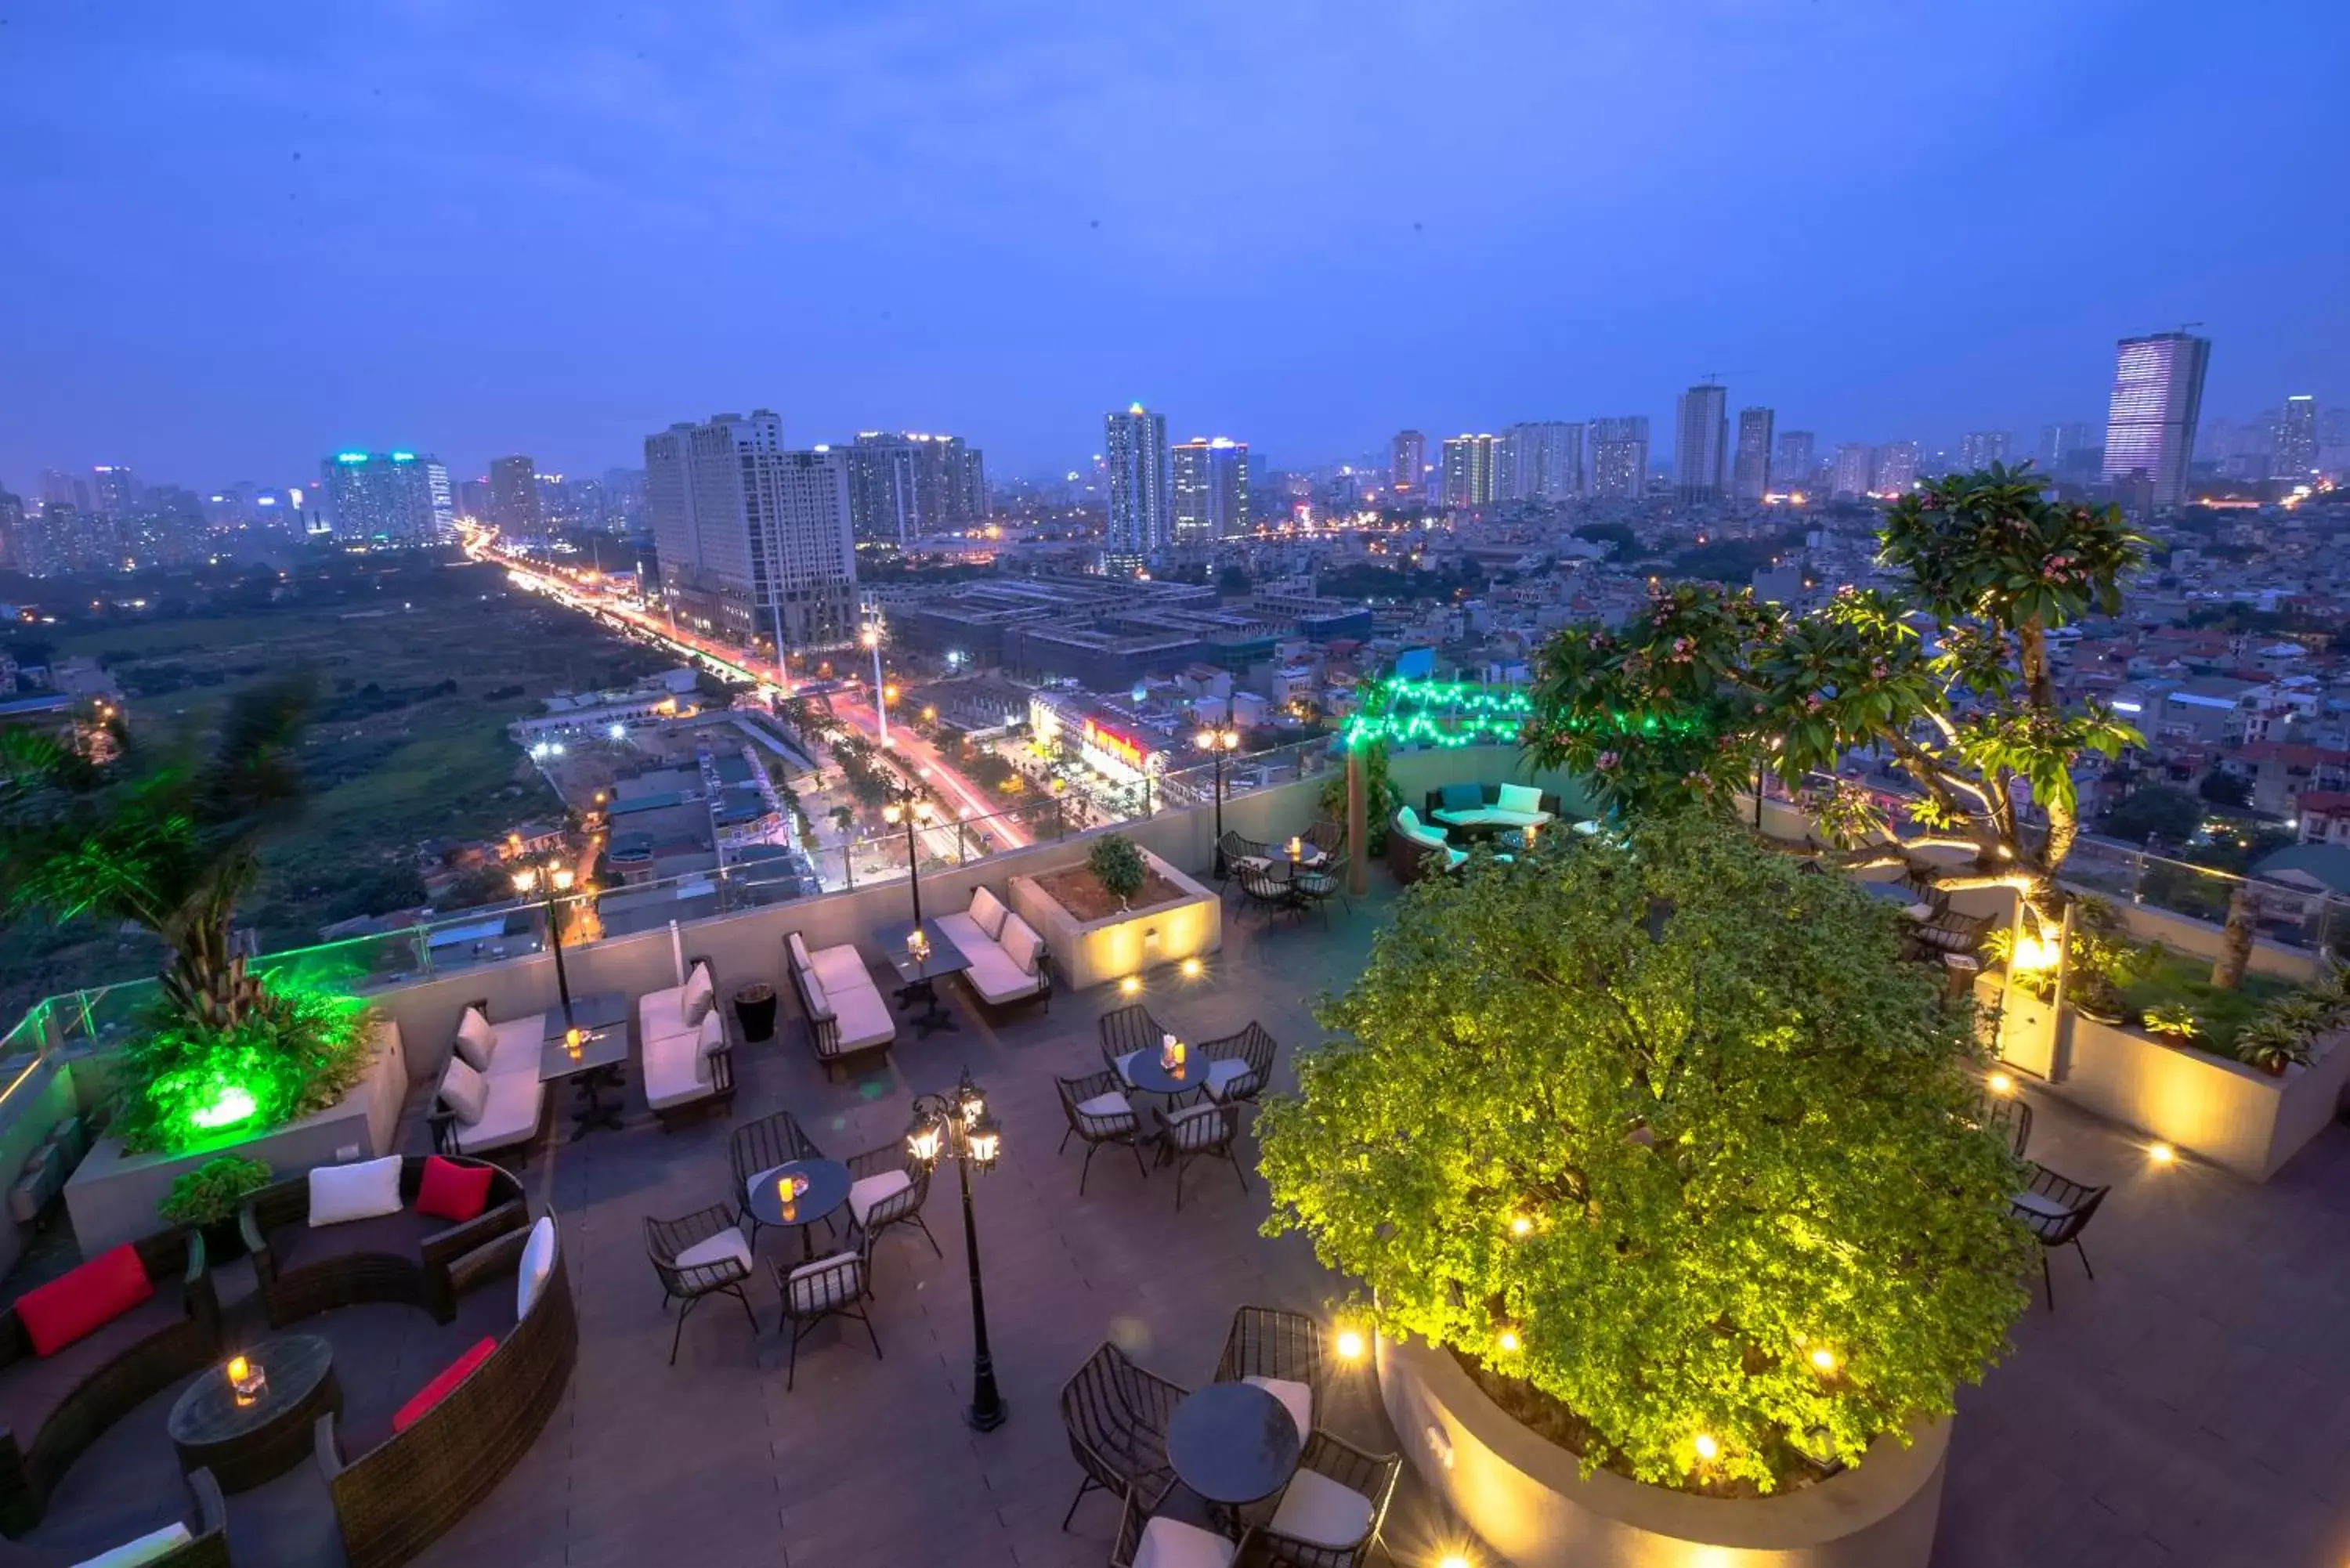 Restaurant/places to eat in Wyndham Garden Hanoi